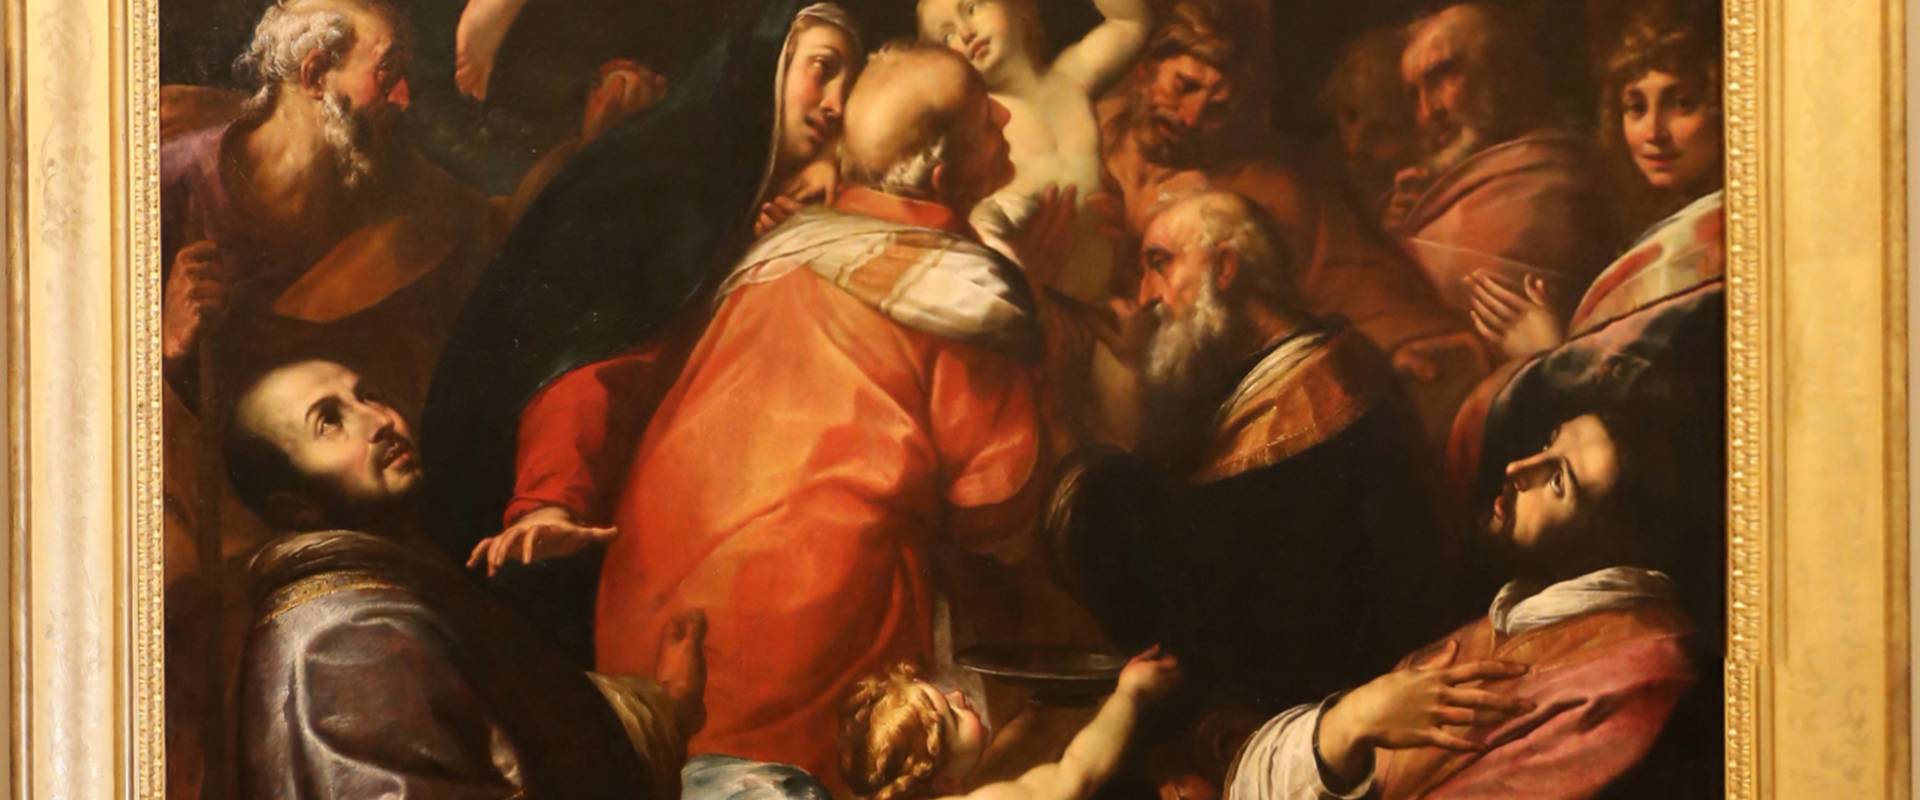 Giulio cesare procaccini, circoncisione di gesù coi santi Ignazio e Francesco, 1616, 01 photo by Sailko